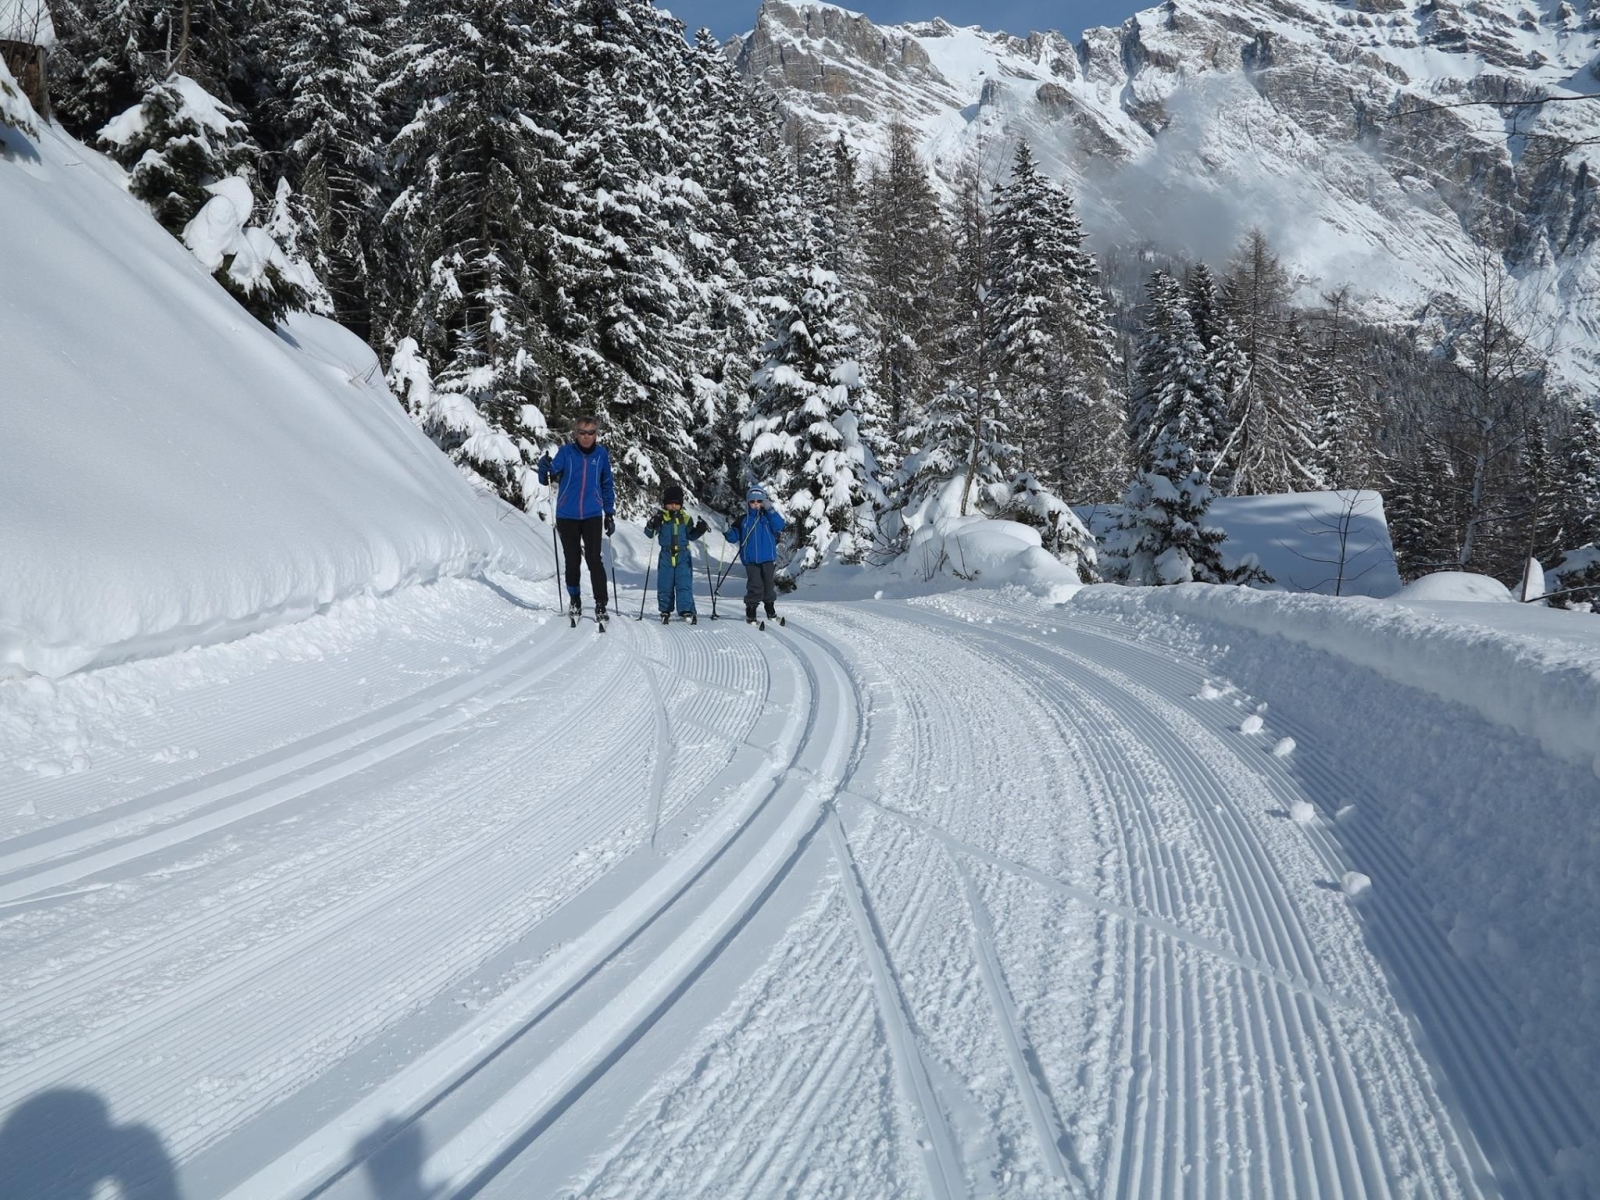 Le plateau d'Ovronnaz offre de belles possibilités de pratiquer le ski de fond et la raquette à neige. ldd